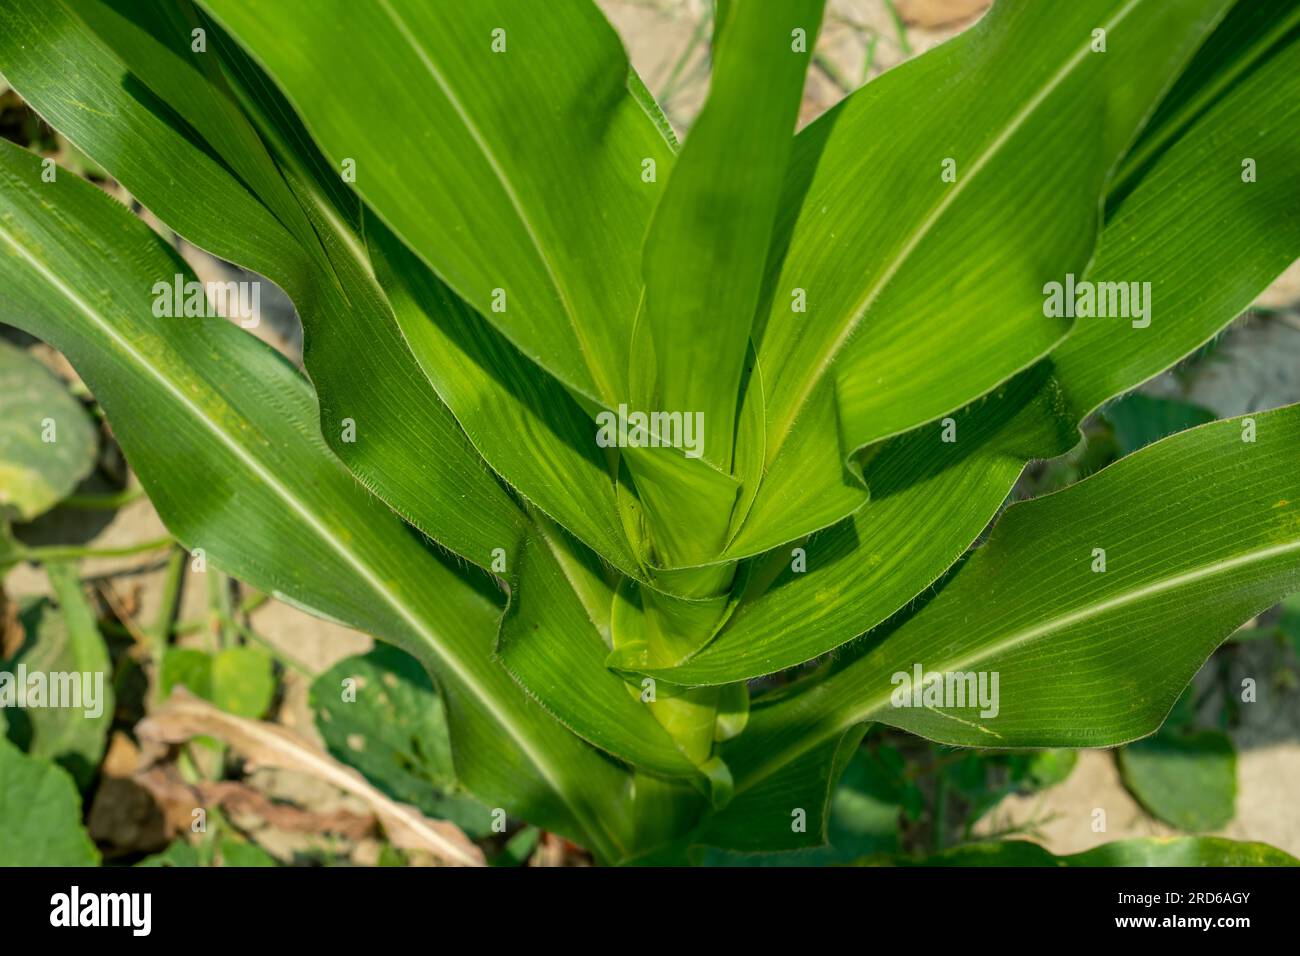 La plante de maïs, ou Dracaena fragrans, la plante de maïs, la plante de maïs. Il a de grandes feuilles allongées et étroites qui poussent alternativement dans des sites opposés Banque D'Images